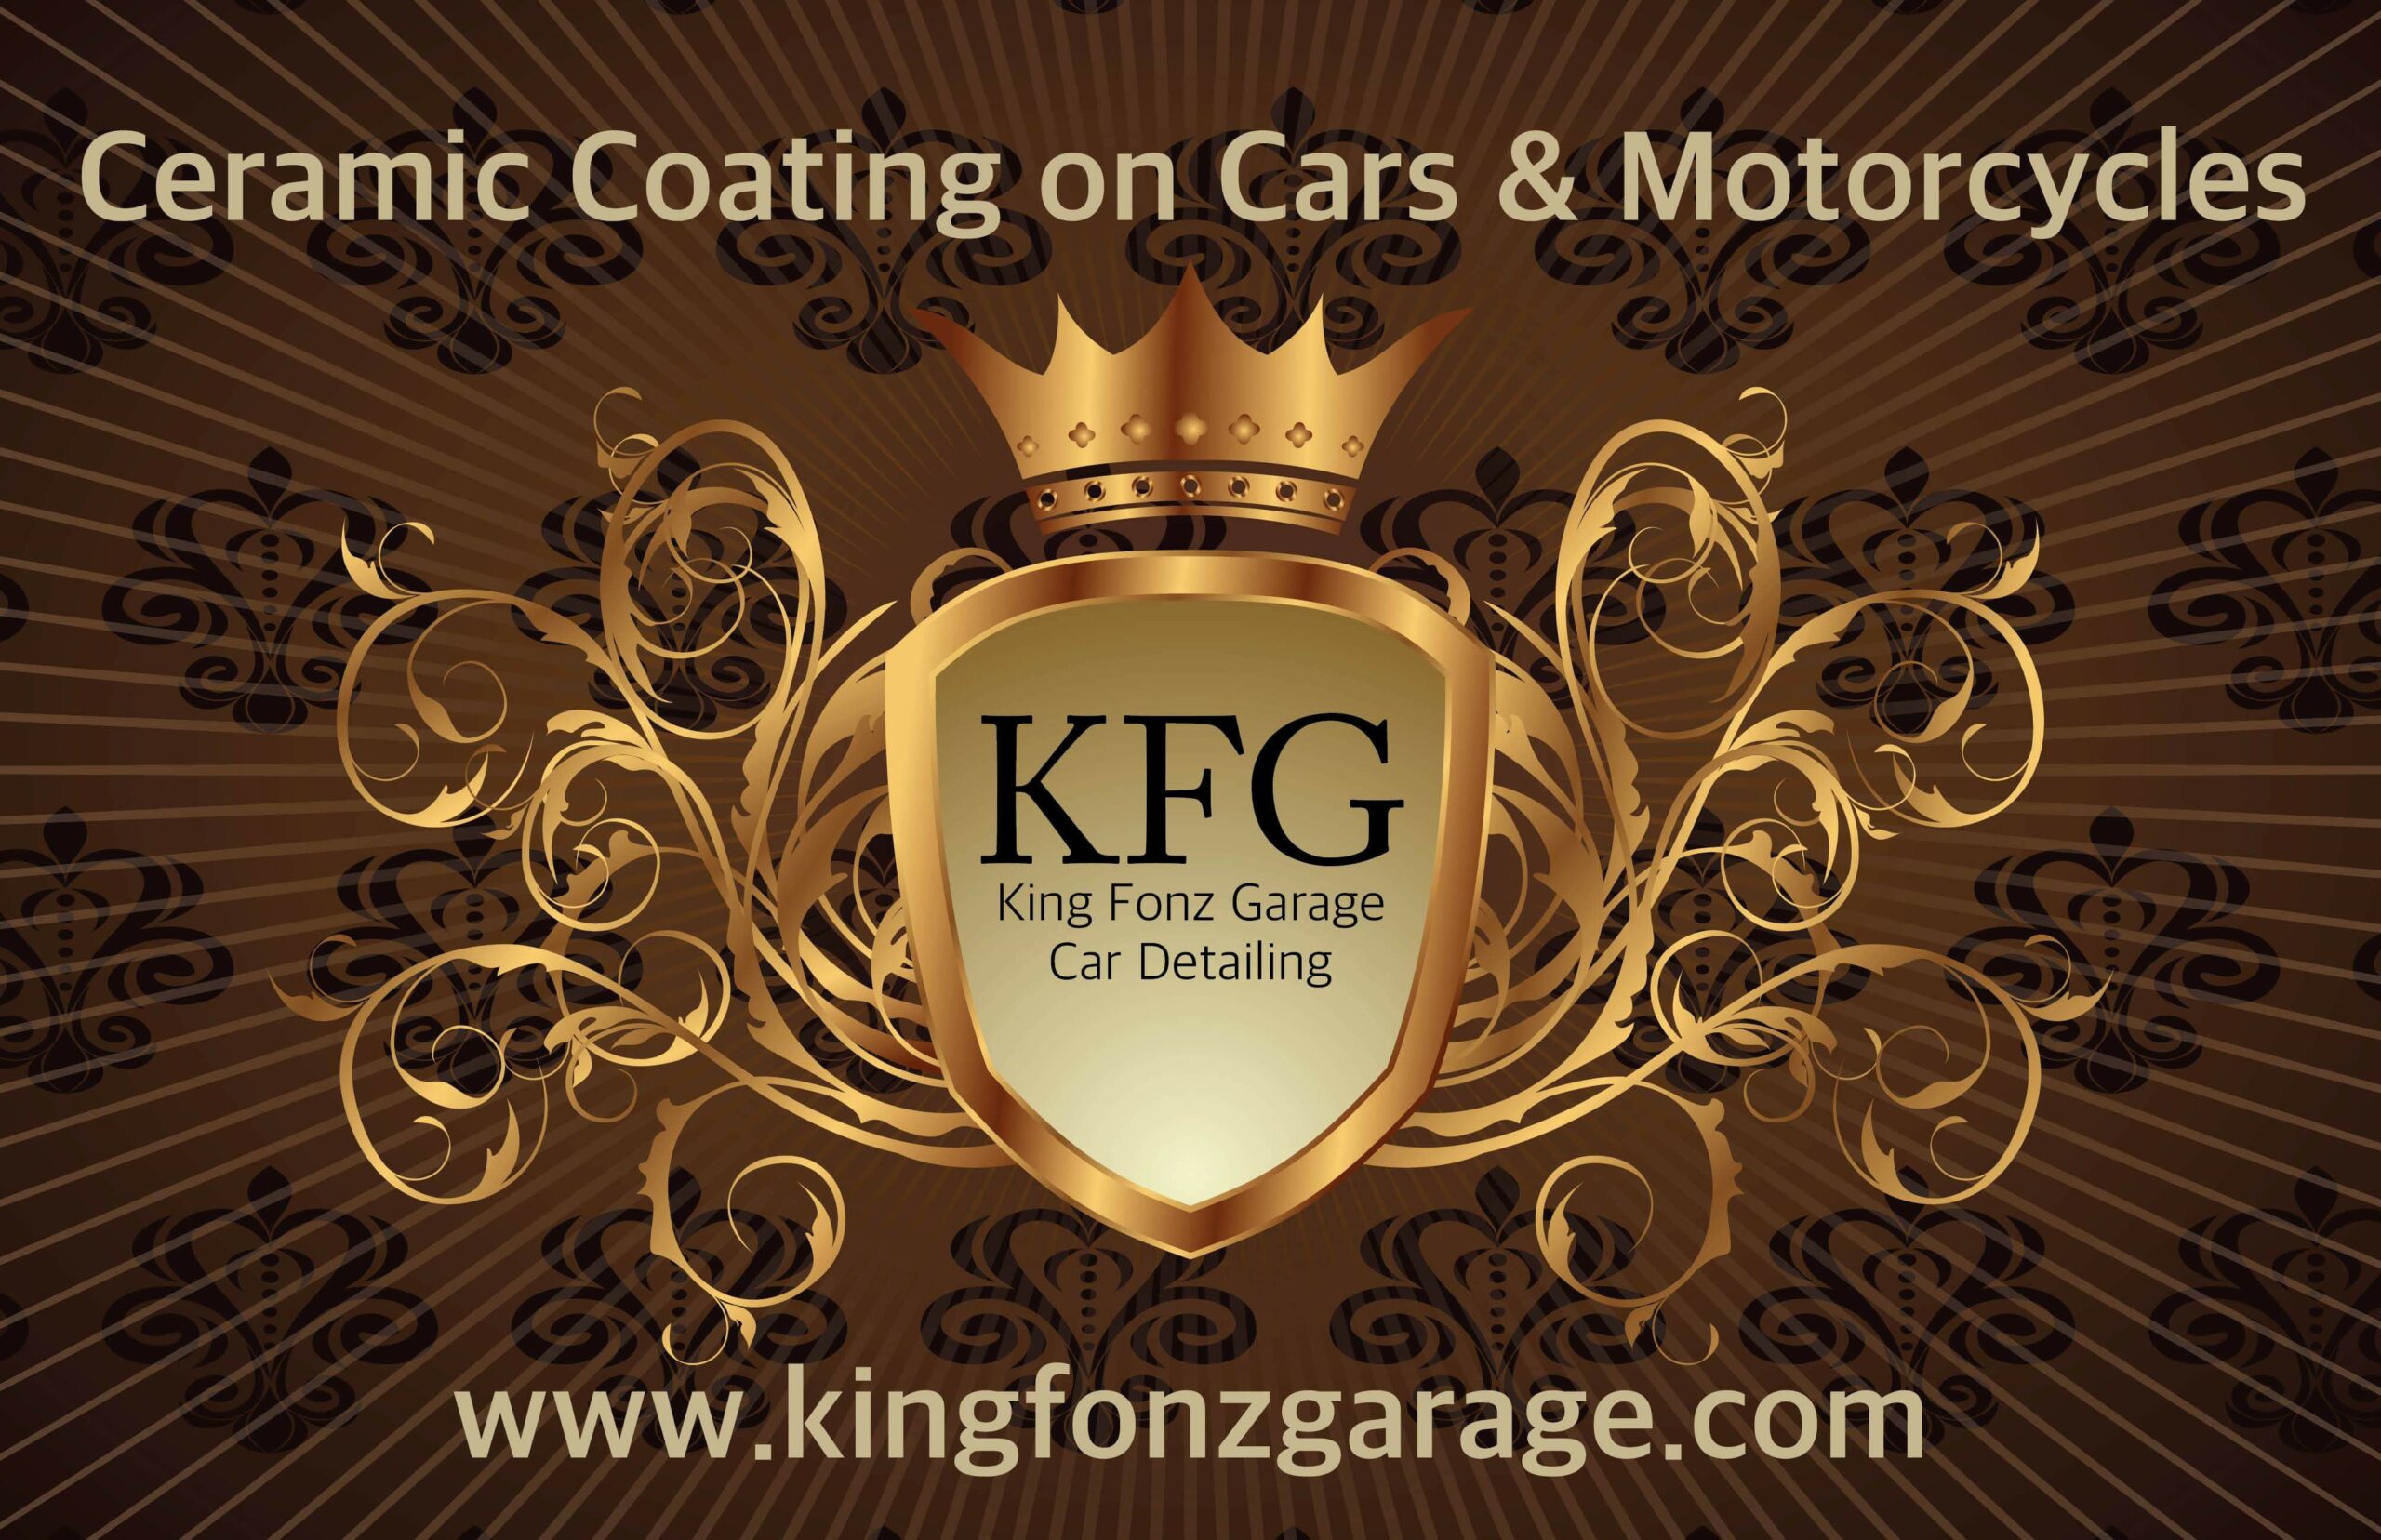 King Fonz Garage Car Detailing